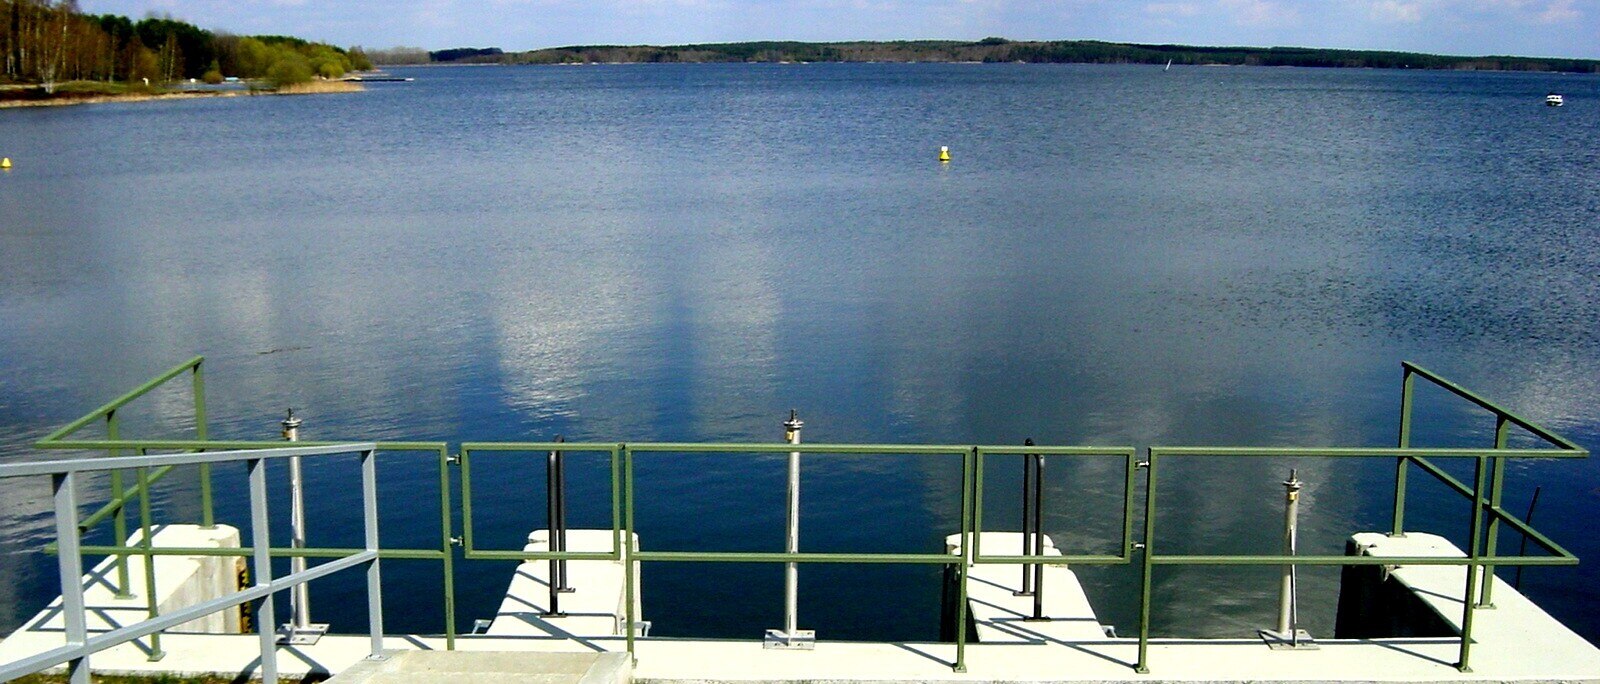 Blick auf einen See, am unteren Bildrand befindet sich ein Betonbauwerk mit grünem Metallgeländer